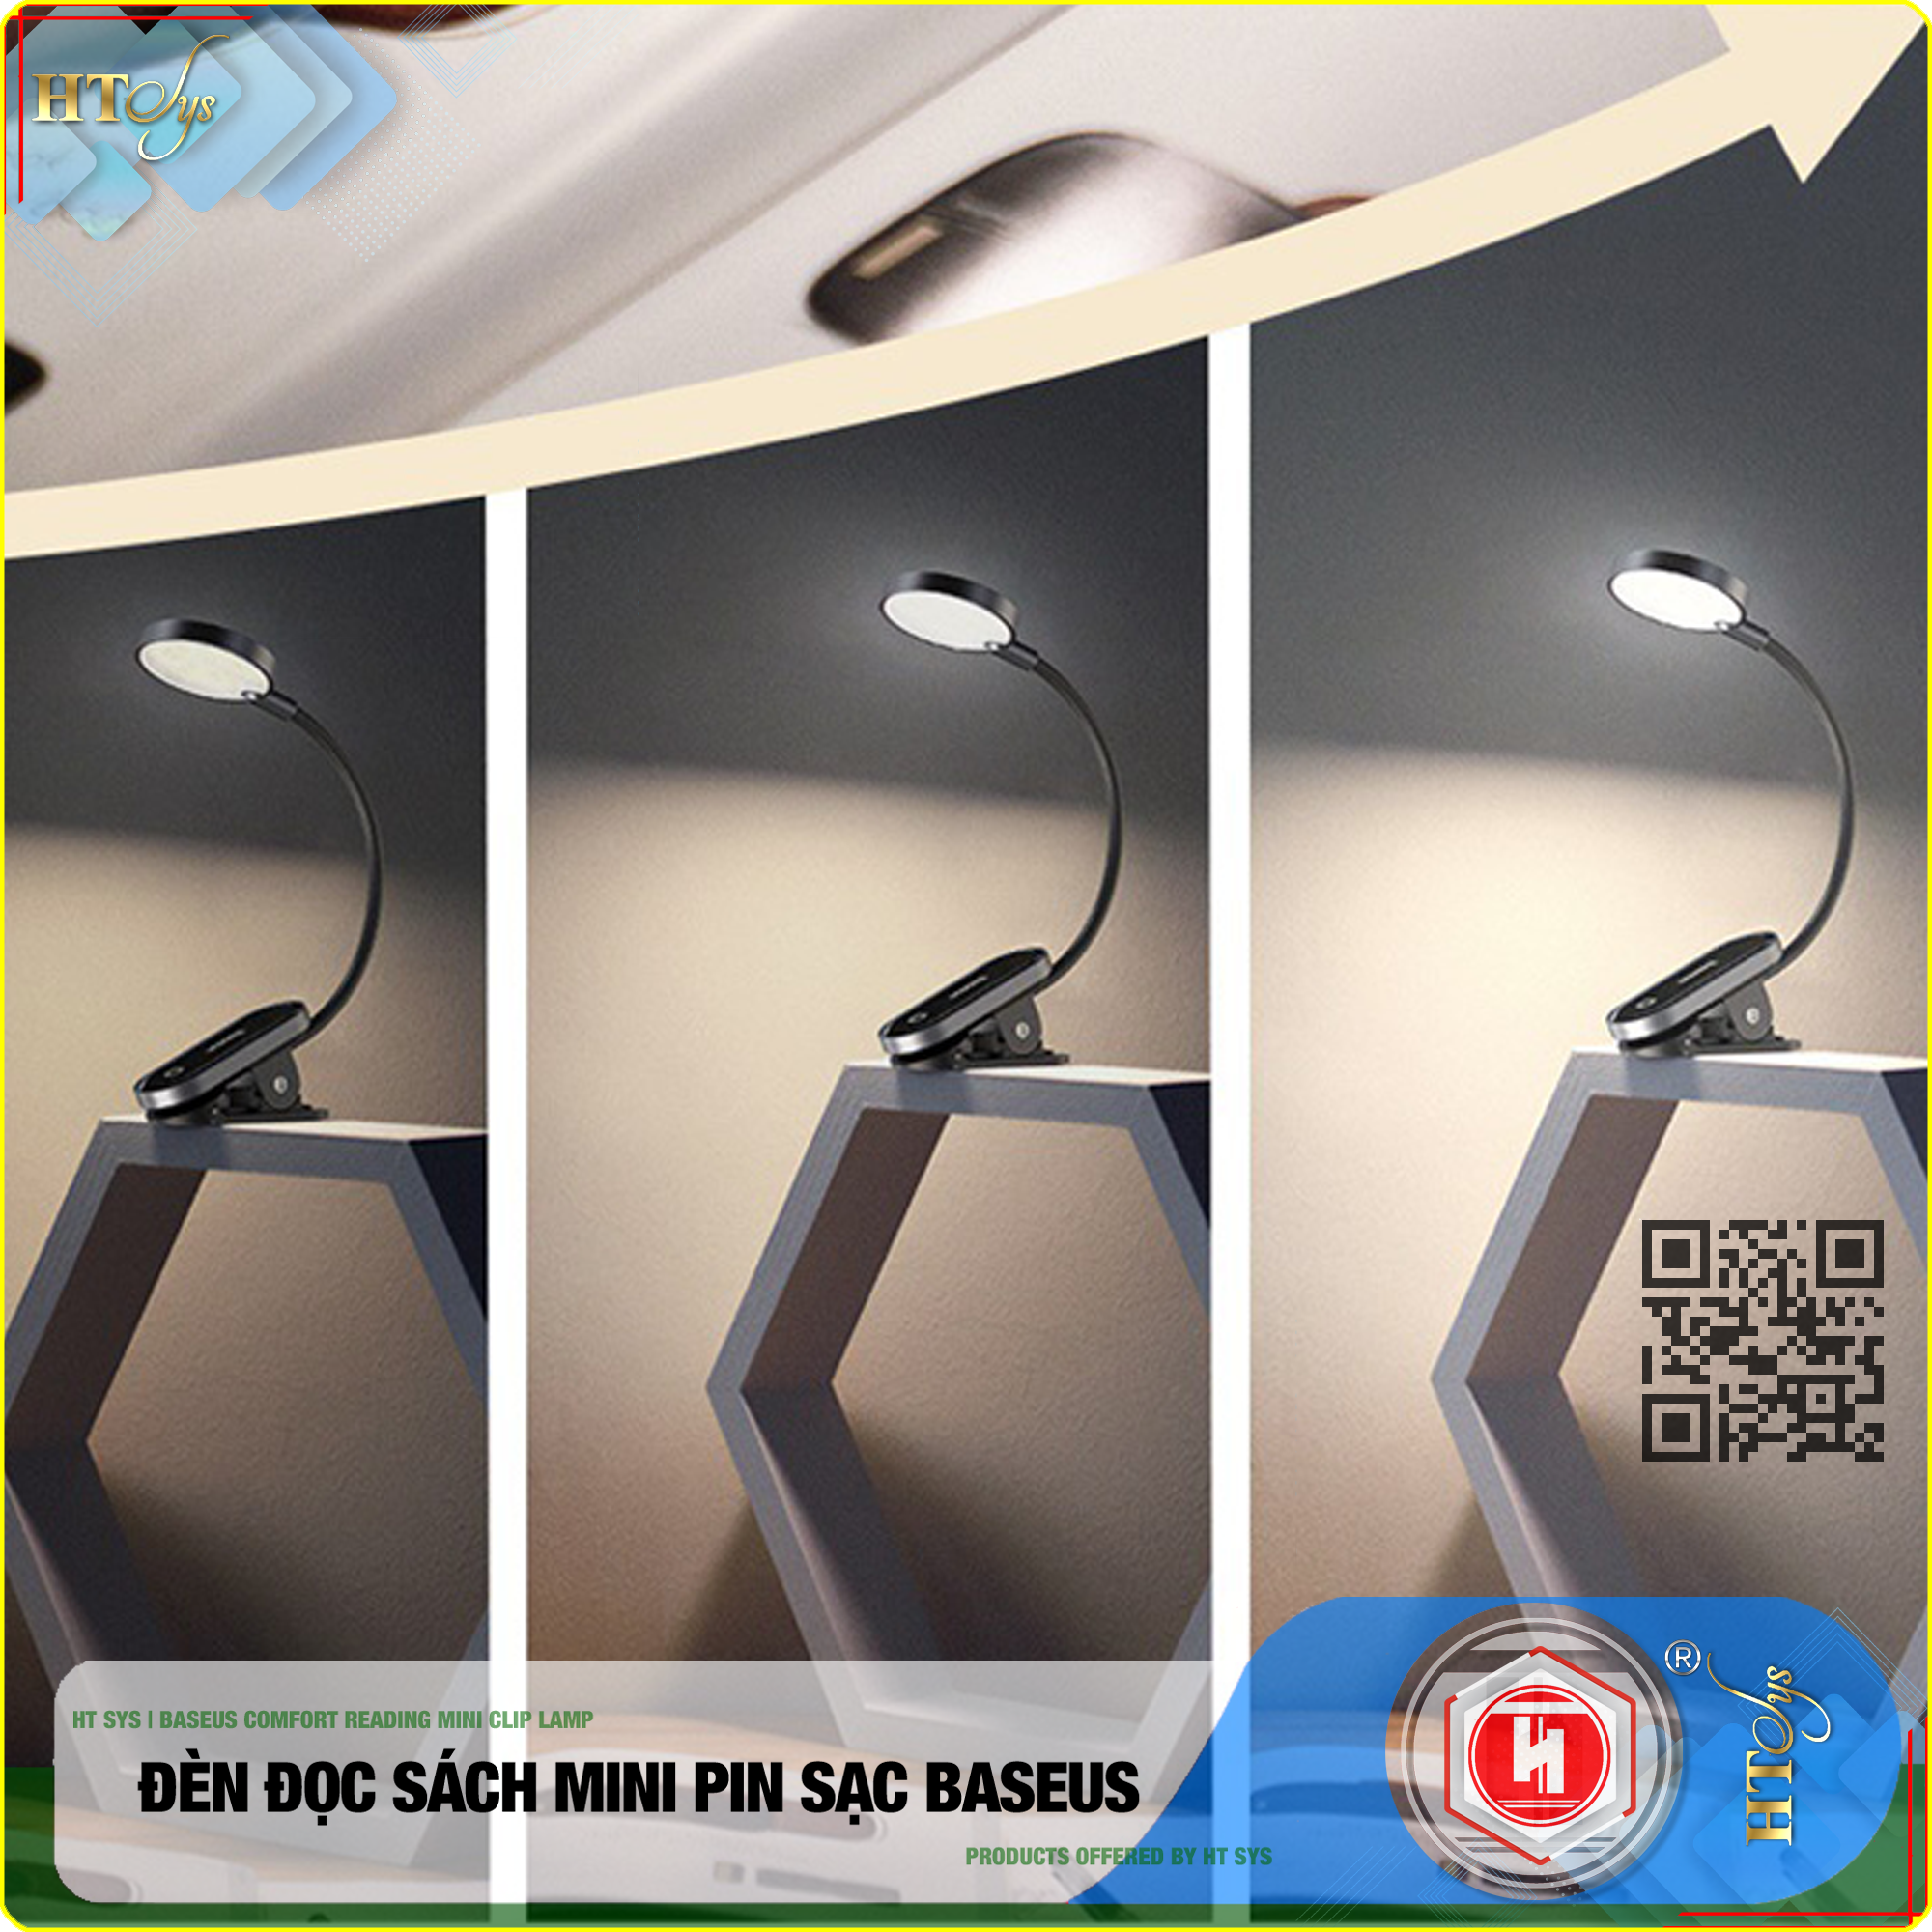 Đèn đọc sách mini HT SYS - Baseus Comfort Reading Mini Clip Lamp - (350mAh - 5V - 4000K - 24H sử dụng - Phím cảm ứng) - Hàng Nhập Khẩu